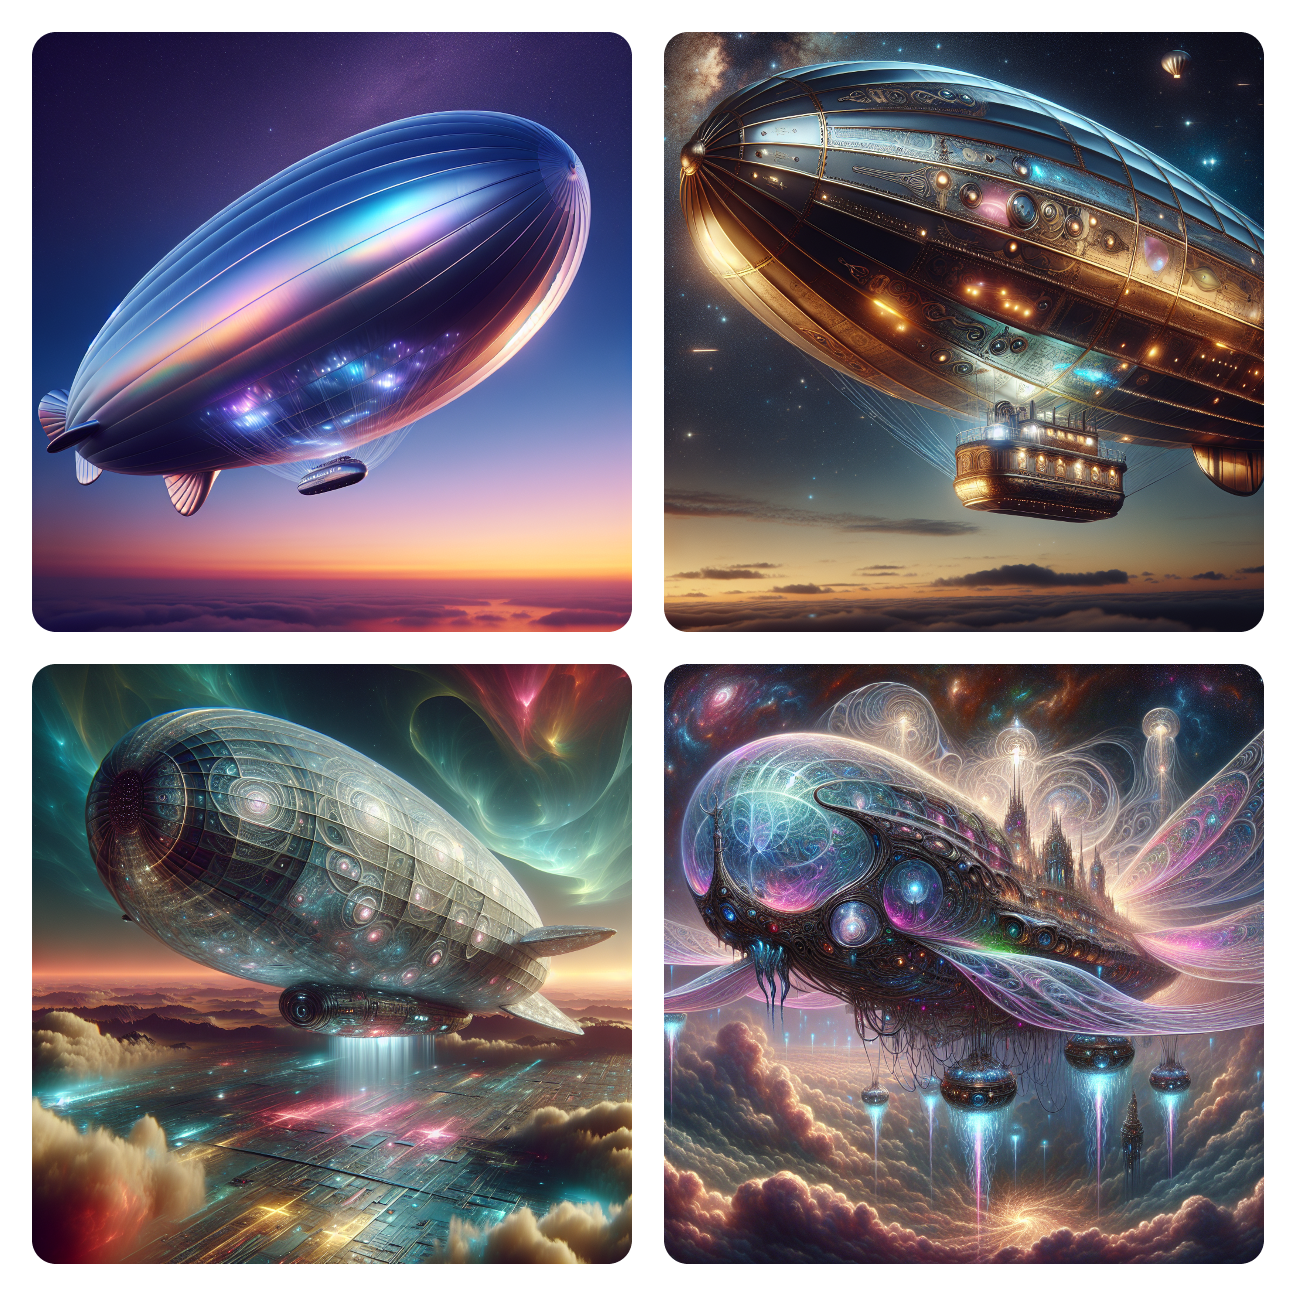 Image: Zeppelins in Space: The Alien Fleet